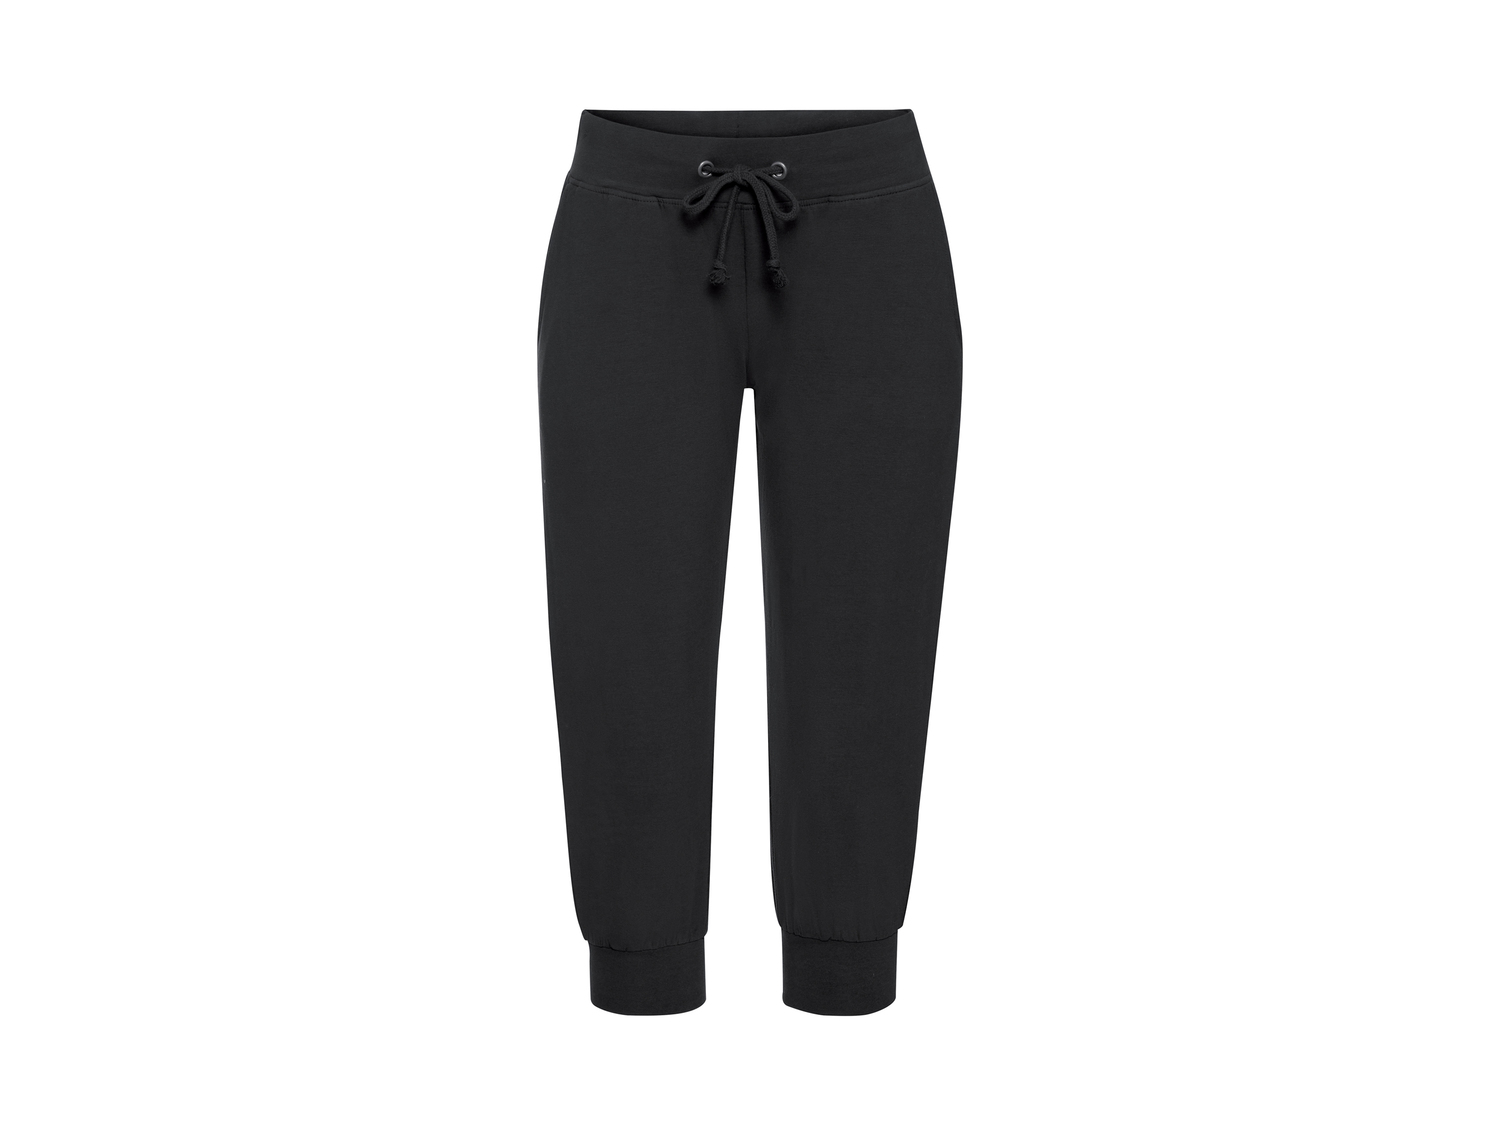 Pantaloni Capri da donna Esmara, prezzo 6.99 &#8364; 
Misure: S-L
Taglie disponibili

Caratteristiche

- ...